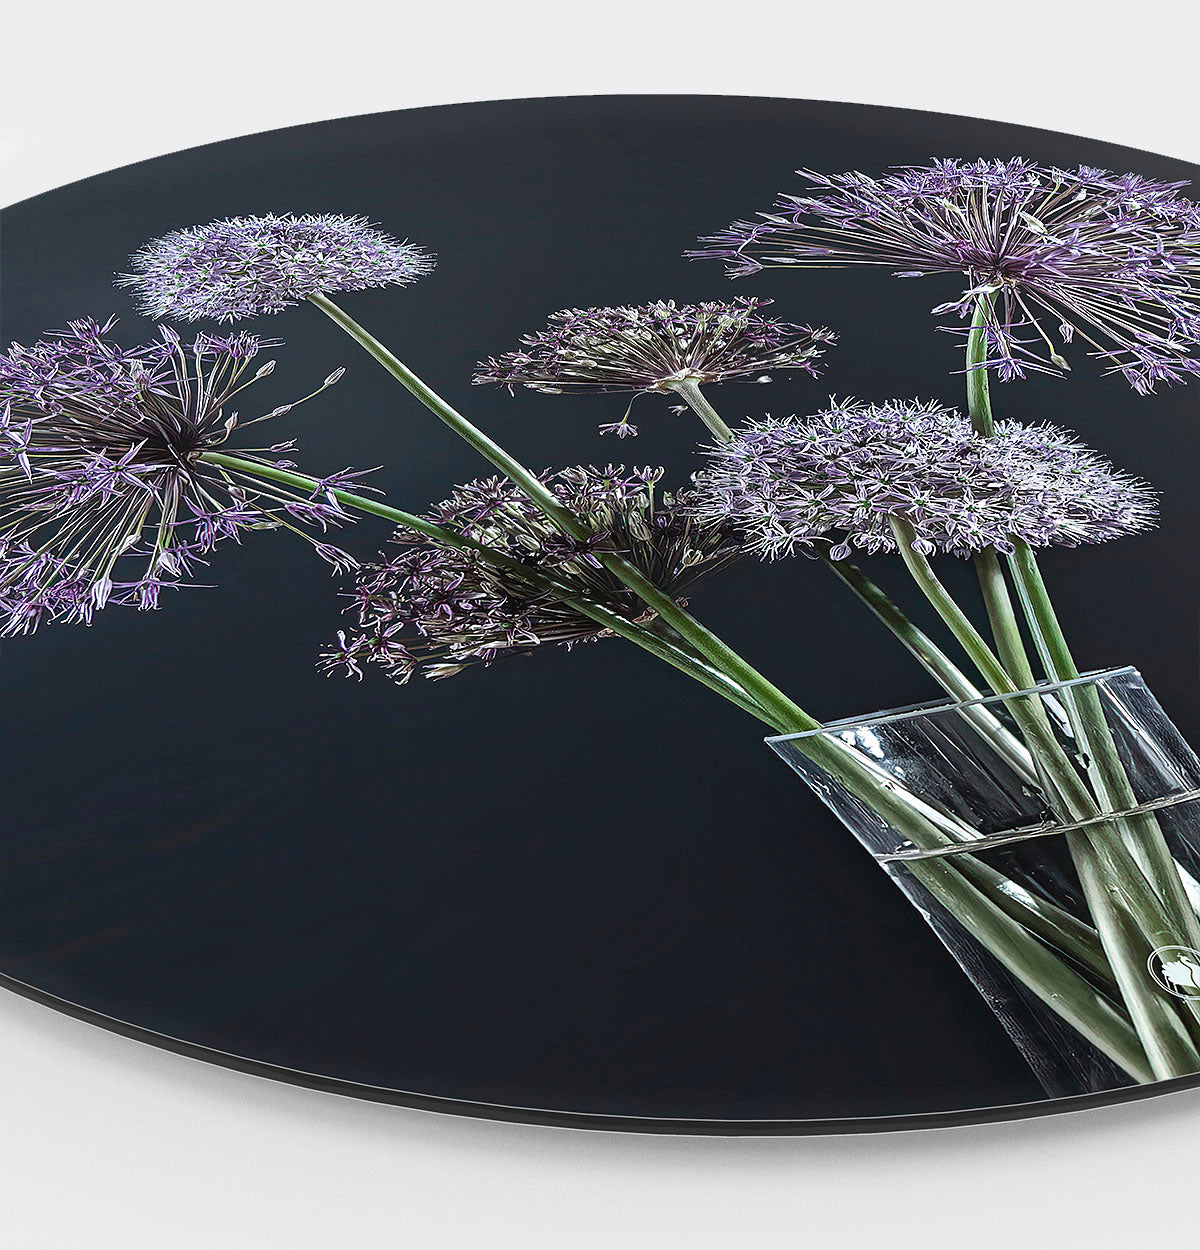 Wandcirkel met paarse bloemen en een zwarte achtergrond in vaas met water